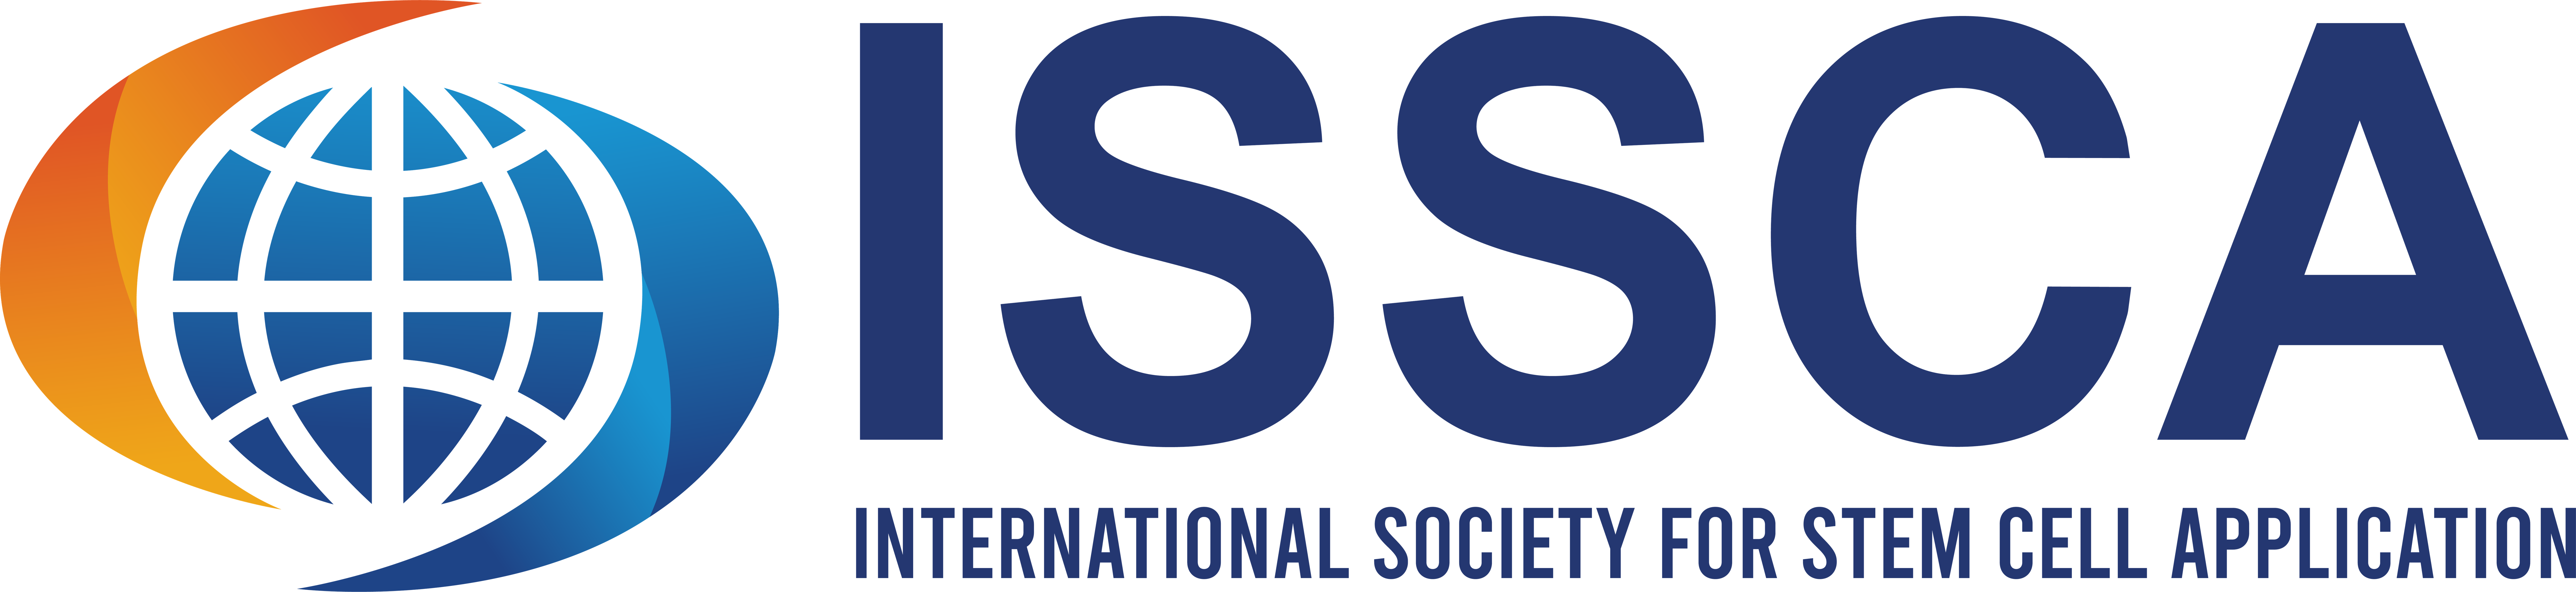 ISSCA Members to Present in the XXV Congreso Internacional de Medicina, Cirugia Estética y Obesidad